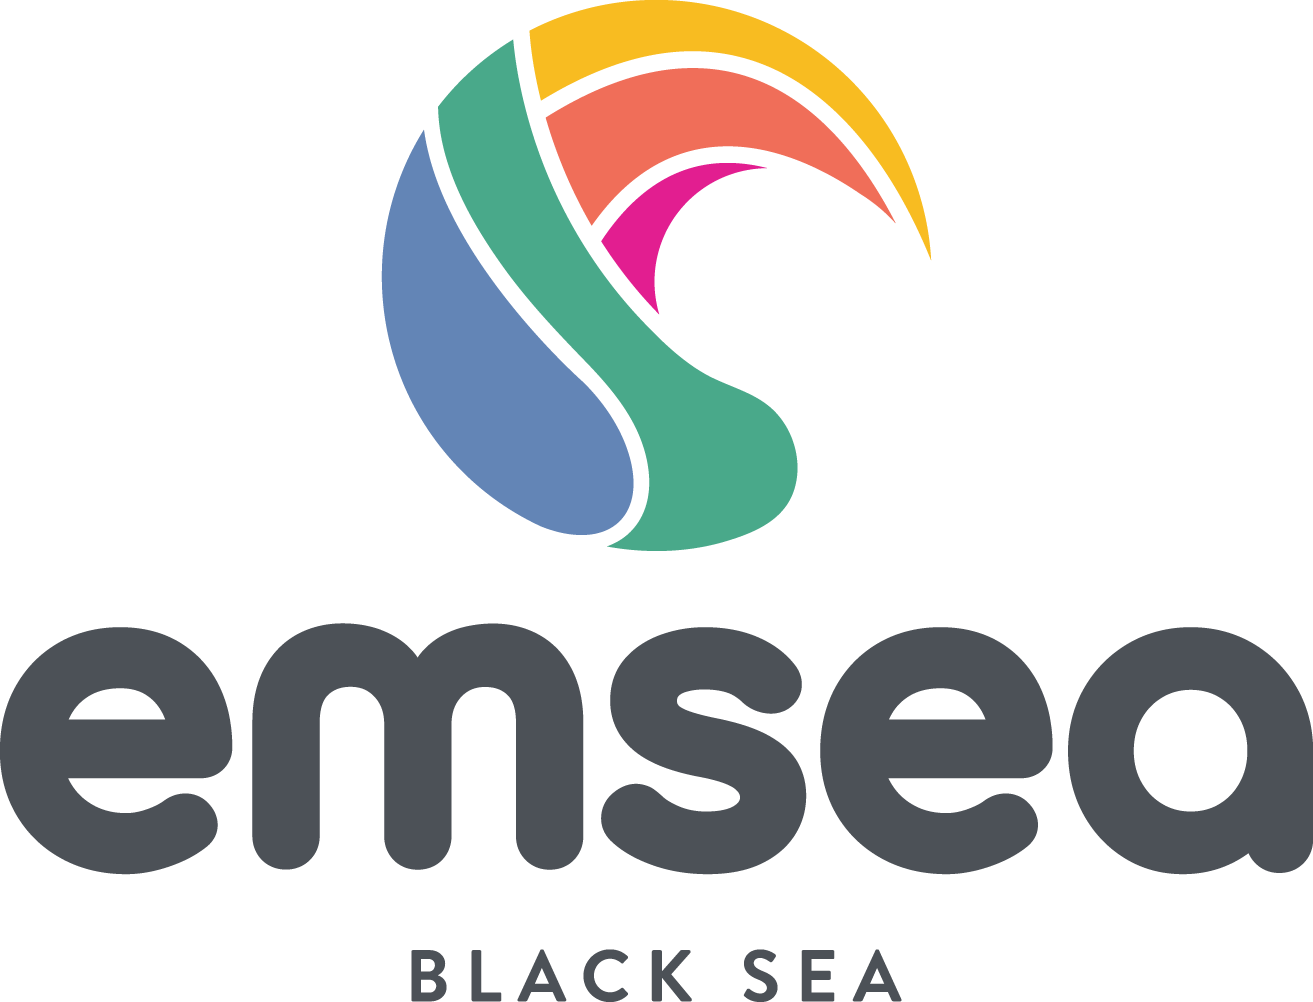 EMSEA-Blacksea